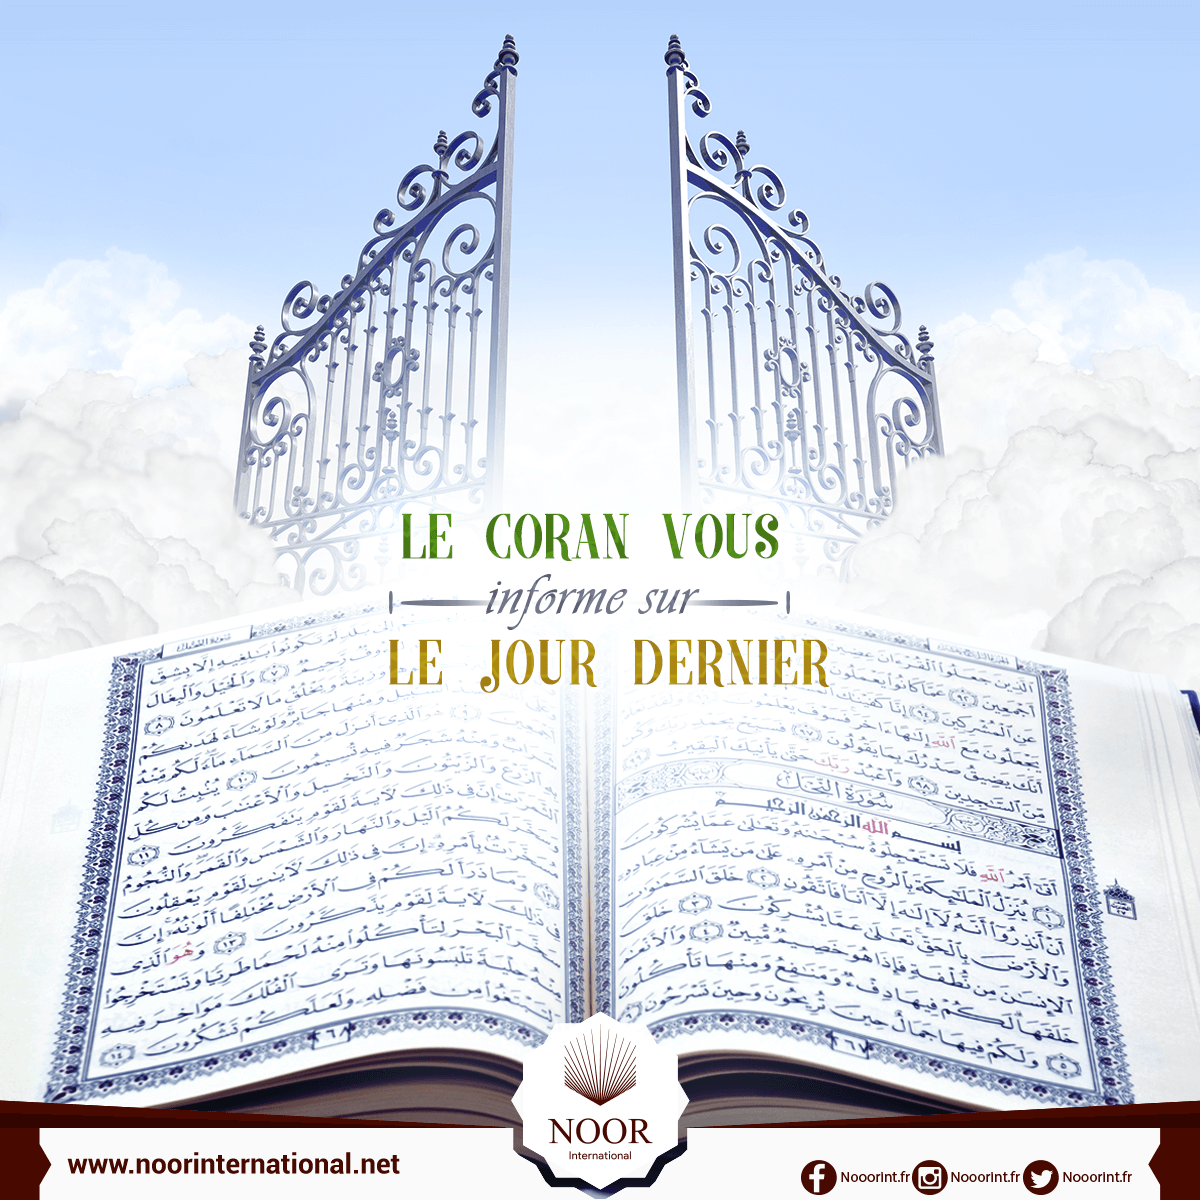 Le Coran vous informe sur le Jour Dernier